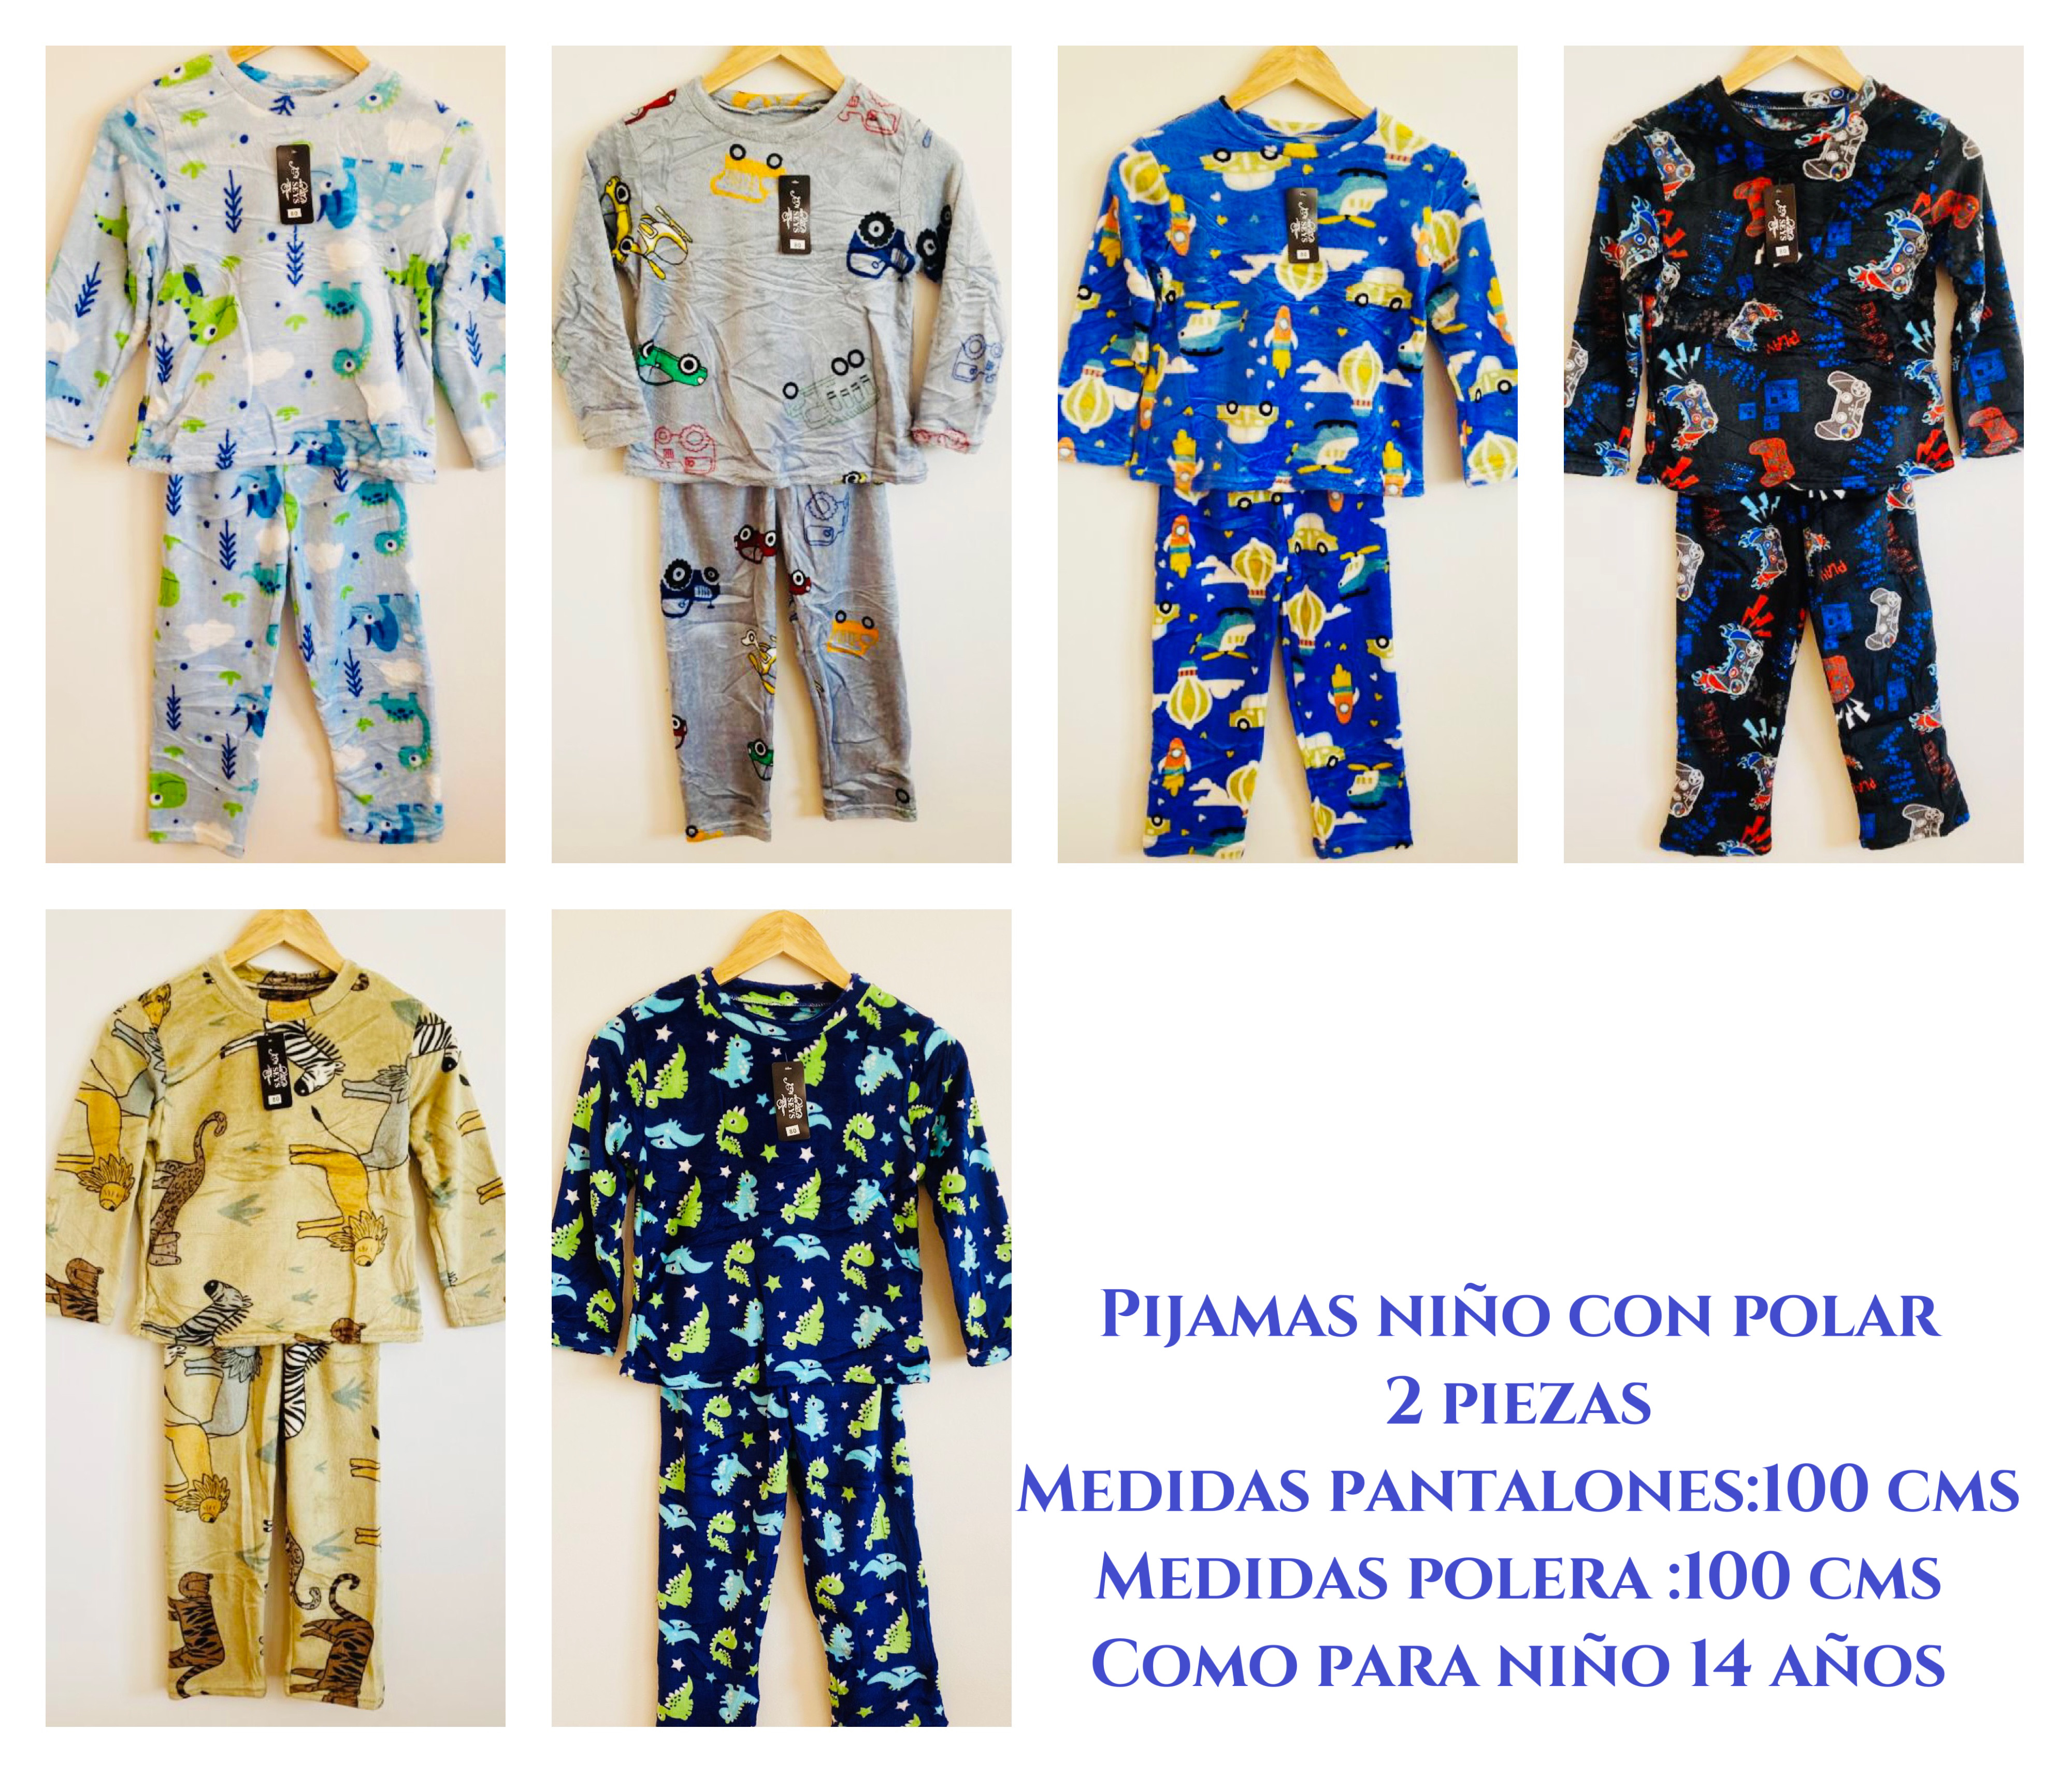 Pijamas niño juvenil con polar talla única como para 14